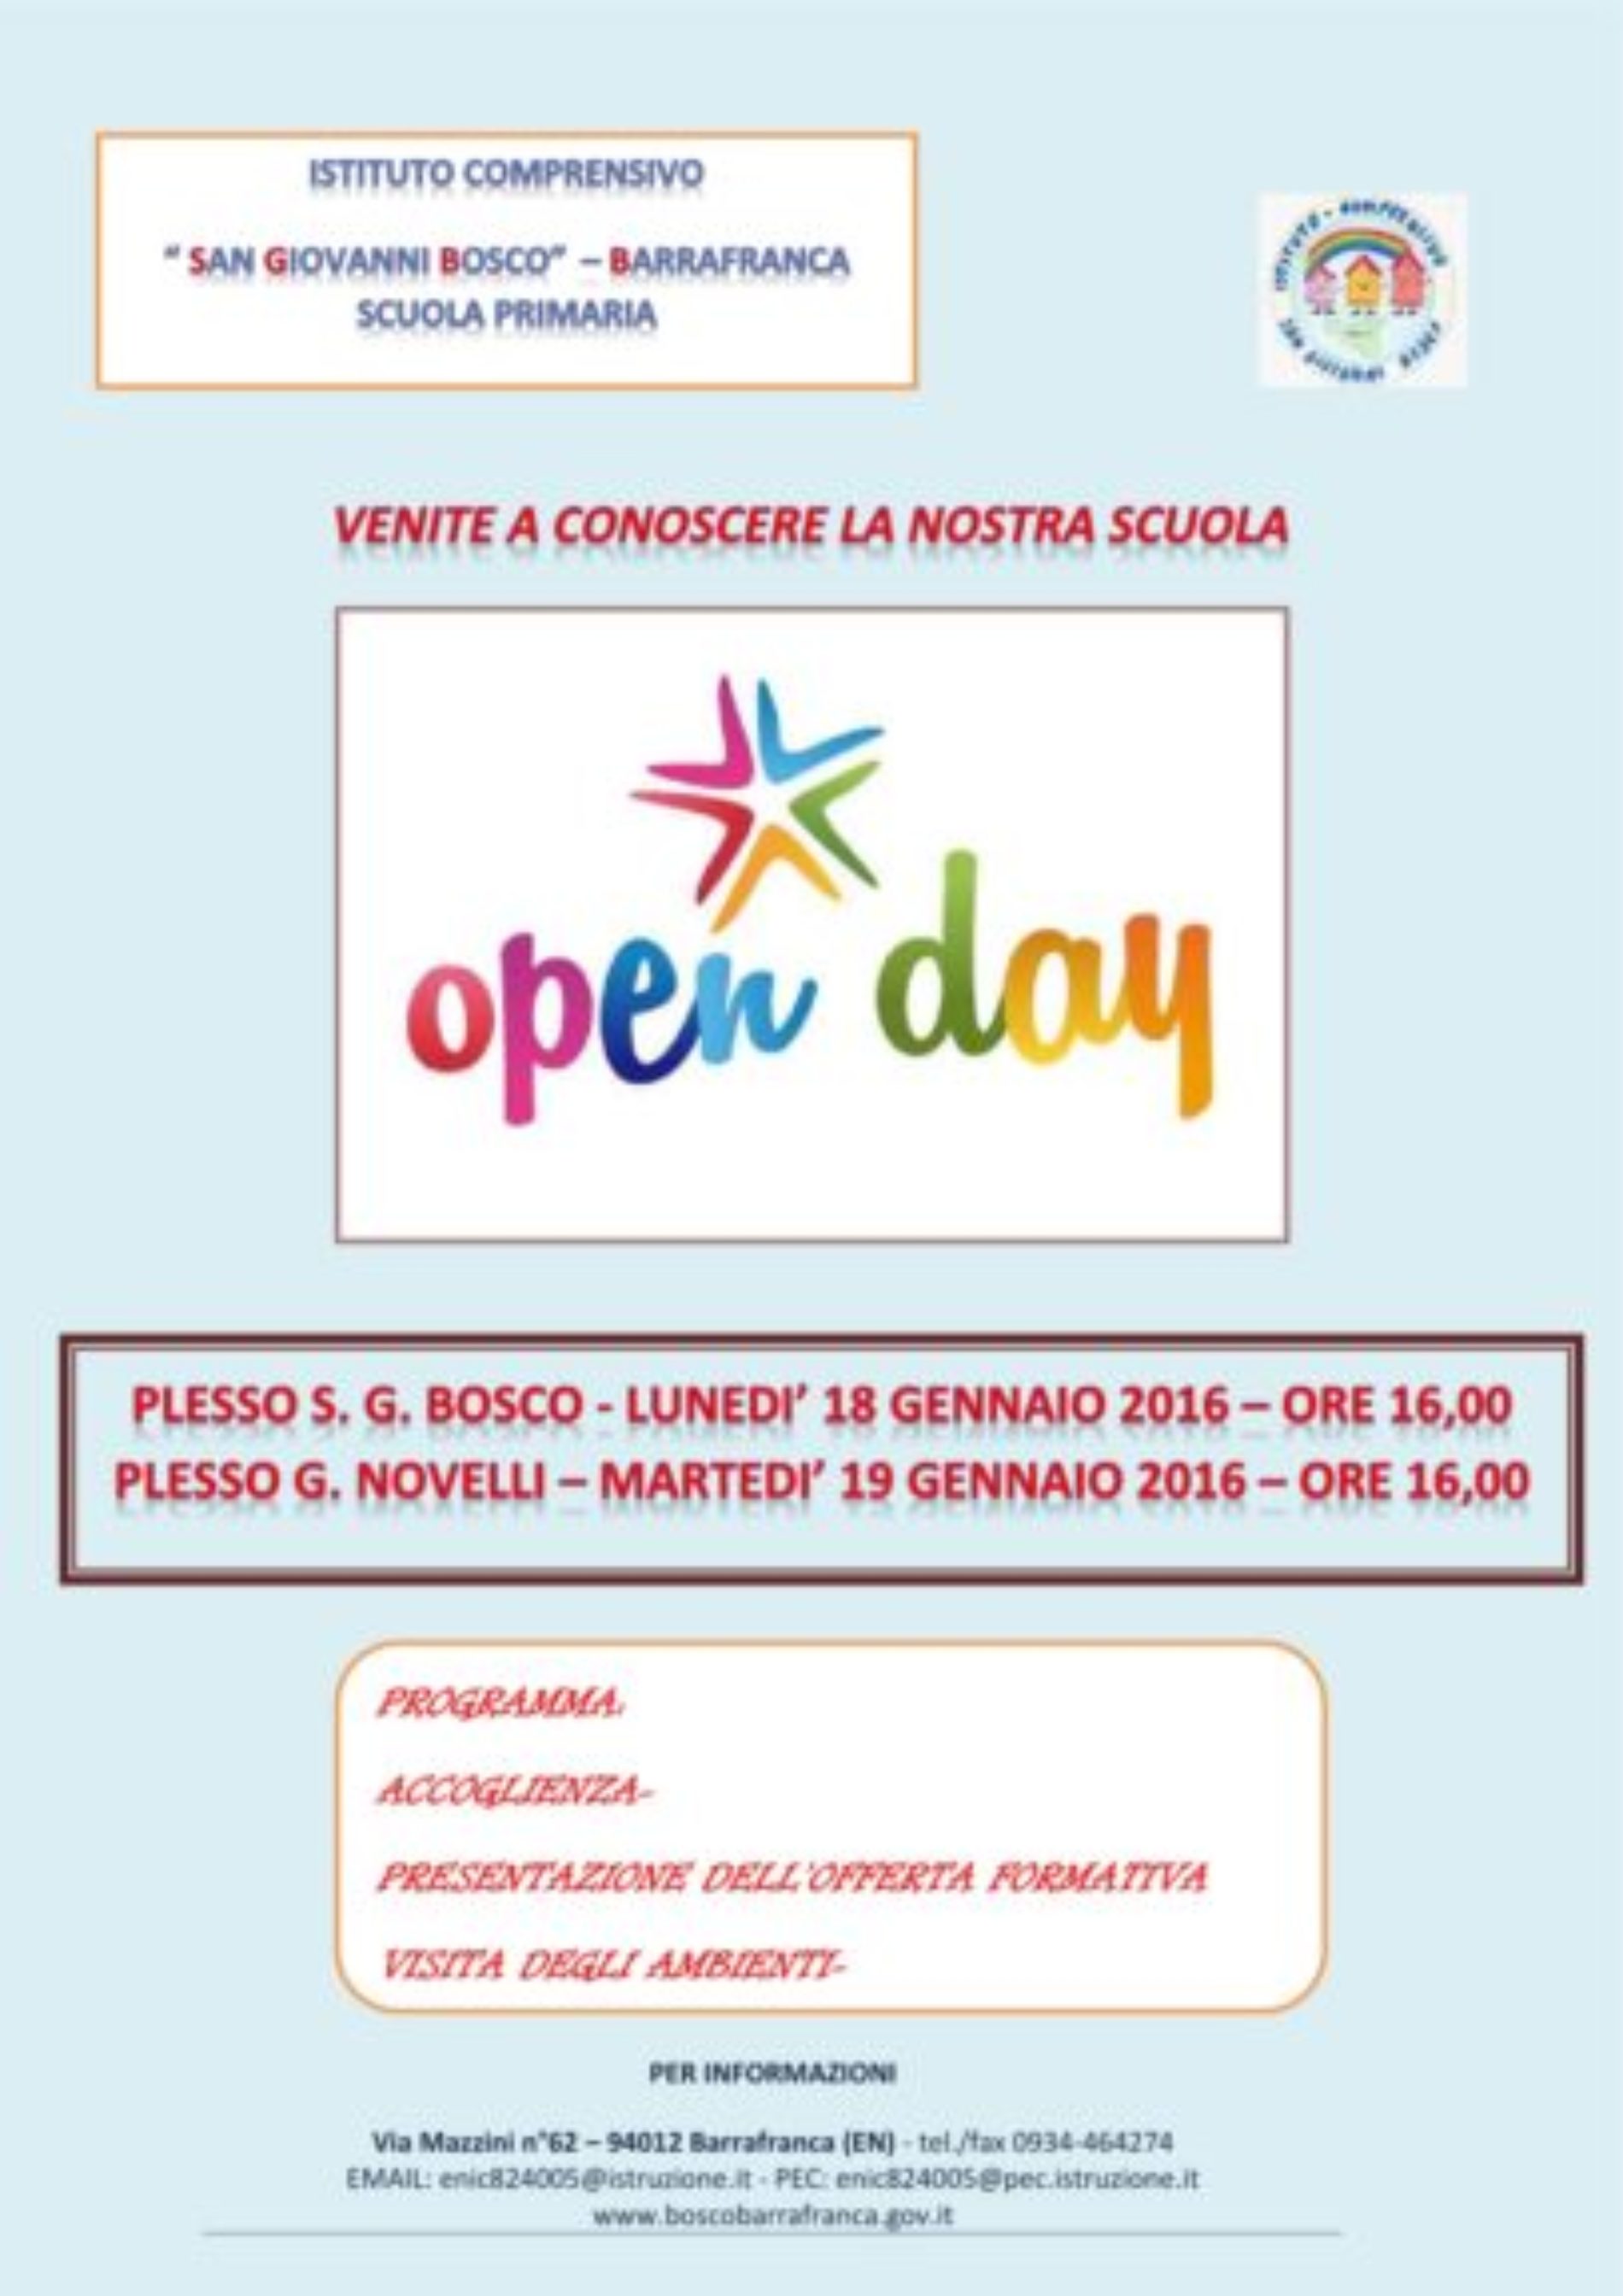 L’istituto comprensivo “San Giovanni Bosco” si apre al territorio con il progetto “Open Day”